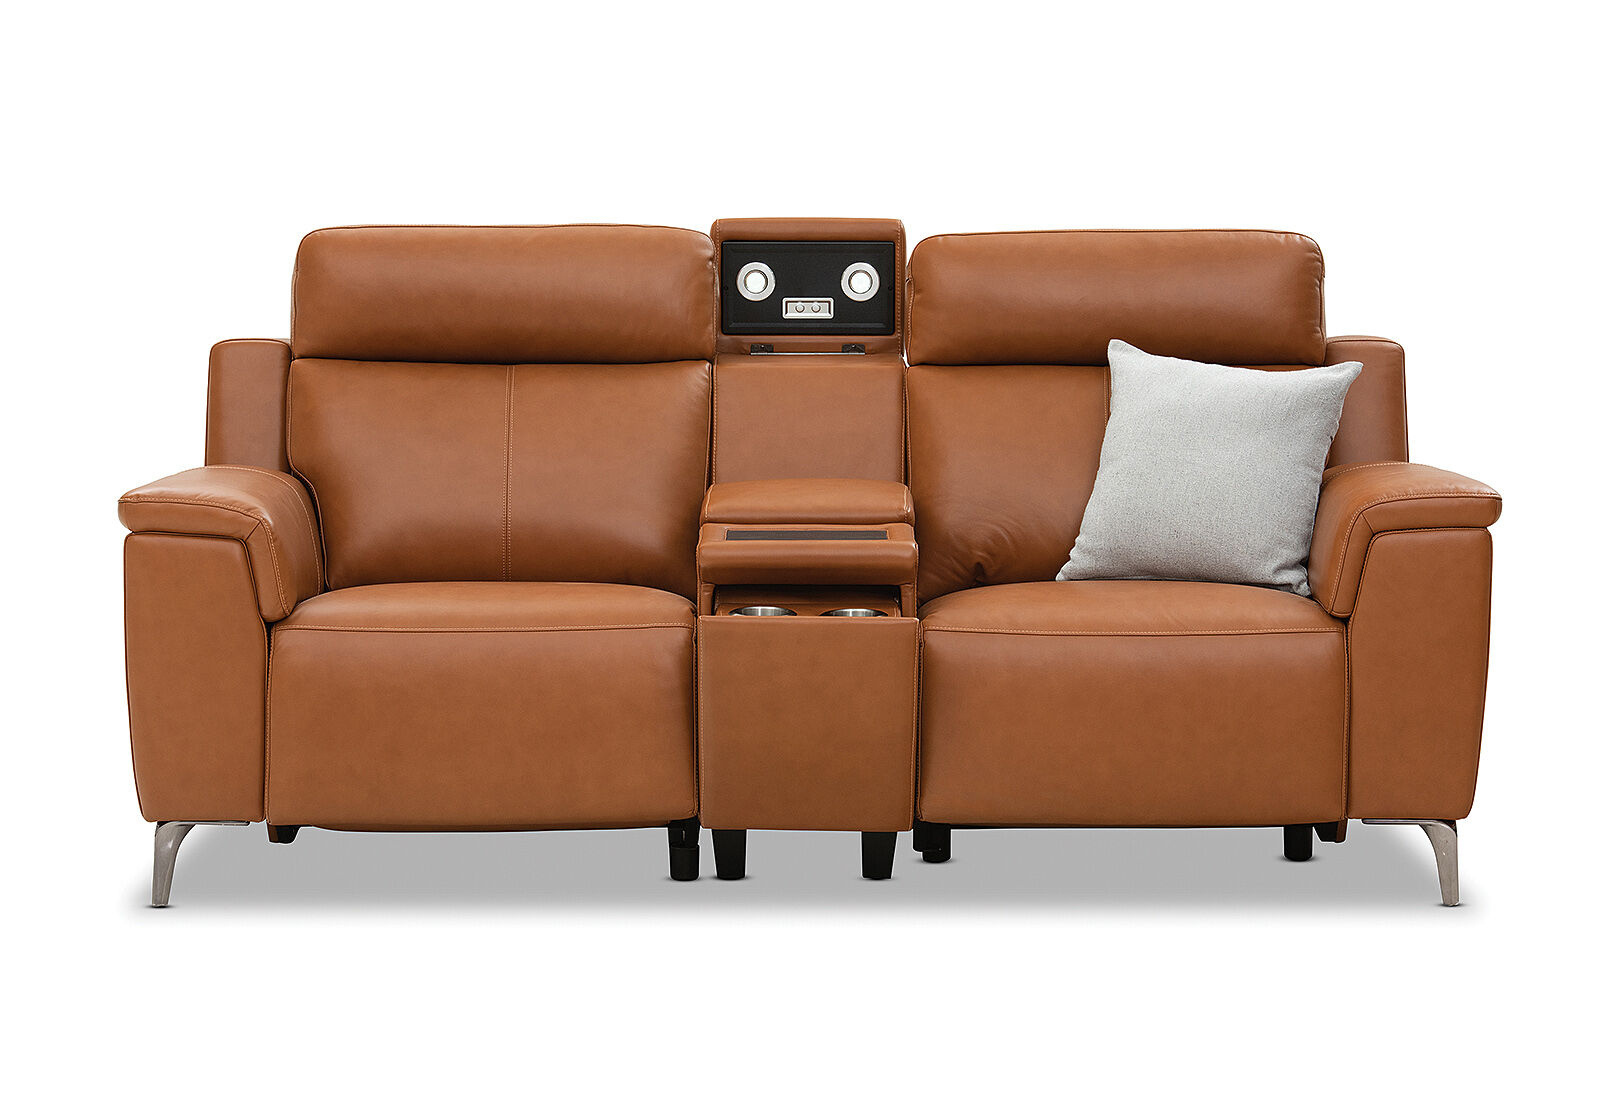 Aristotle Leather 2 Seater Sofa, Leather 2 Seater Sofa